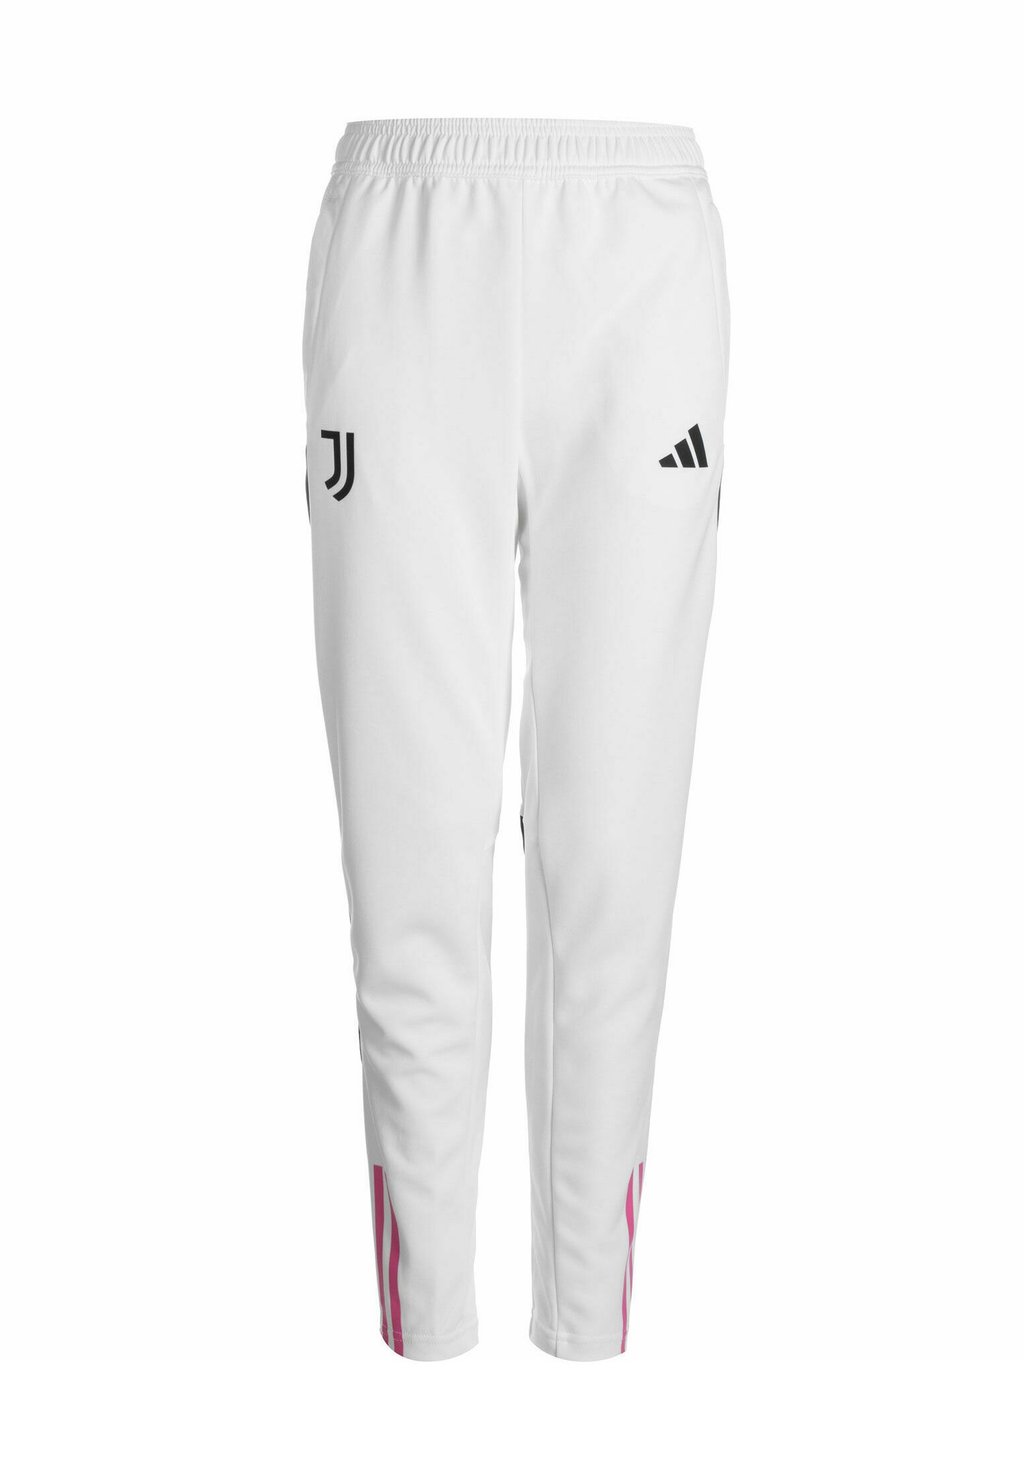 Спортивные брюки Juventus Turin Tiro 23 Adidas, белый